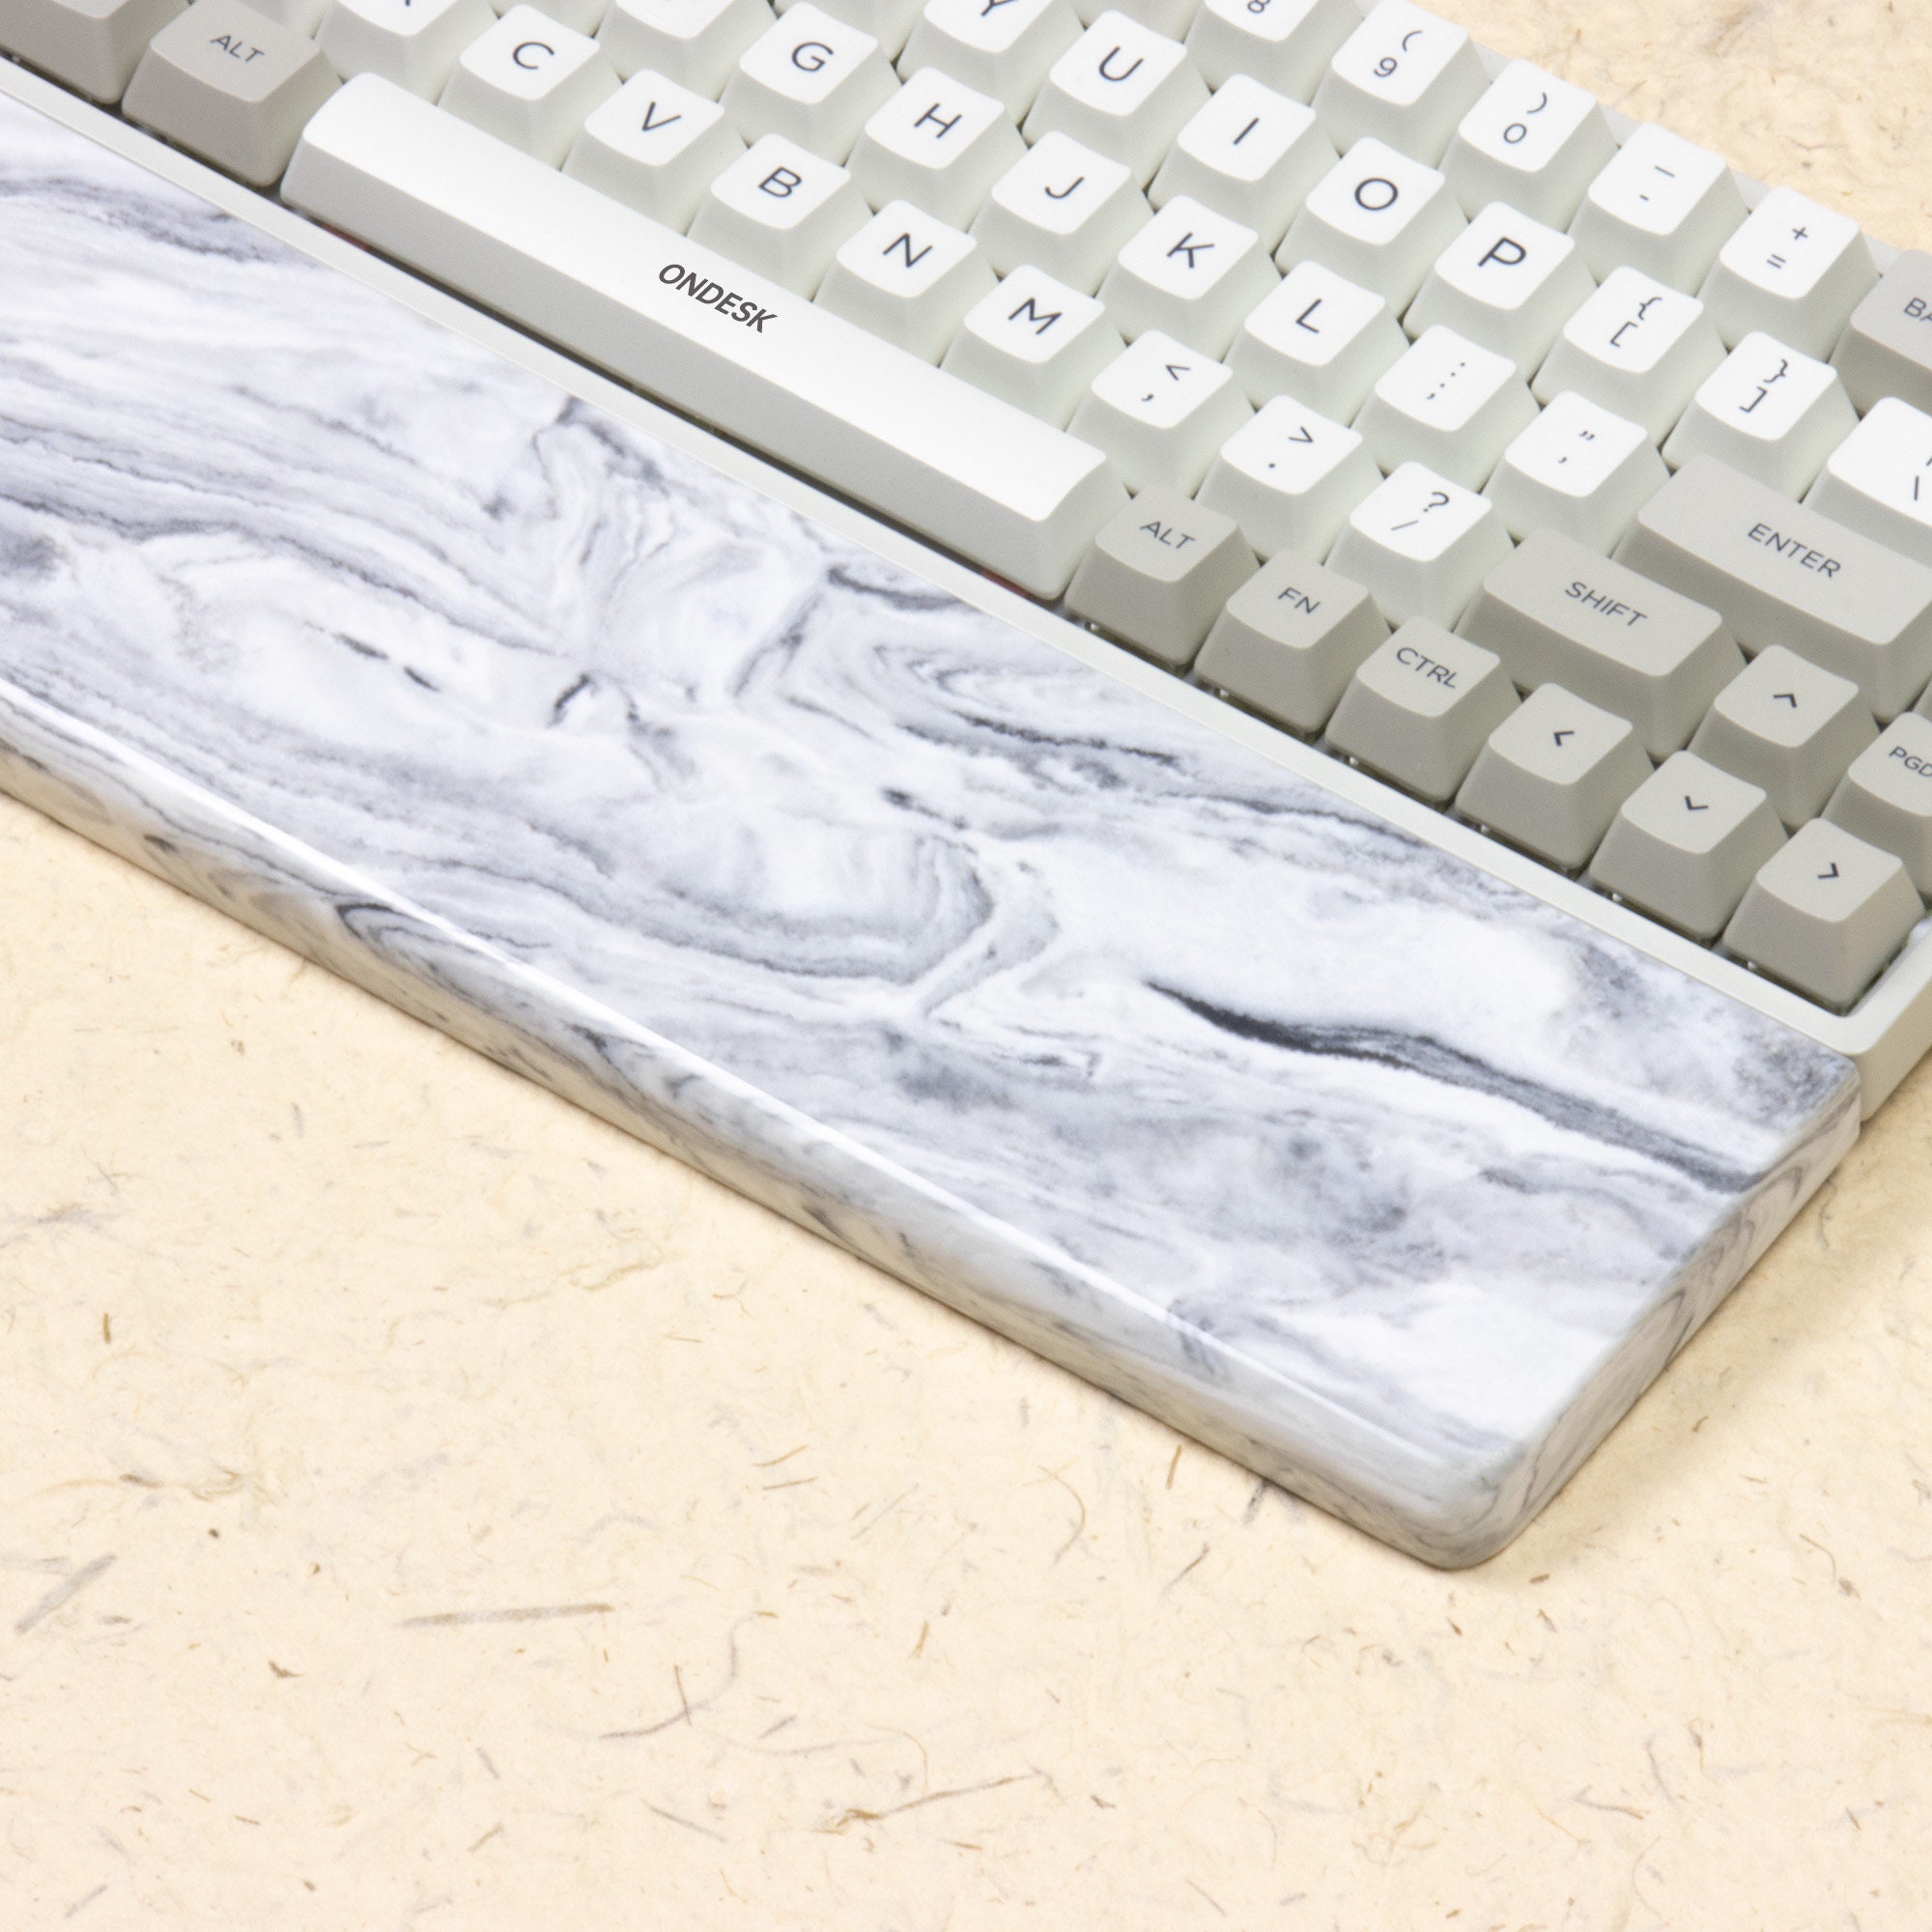 Keyboard Case Dampening Foam for 60% keyboards by Kelowna